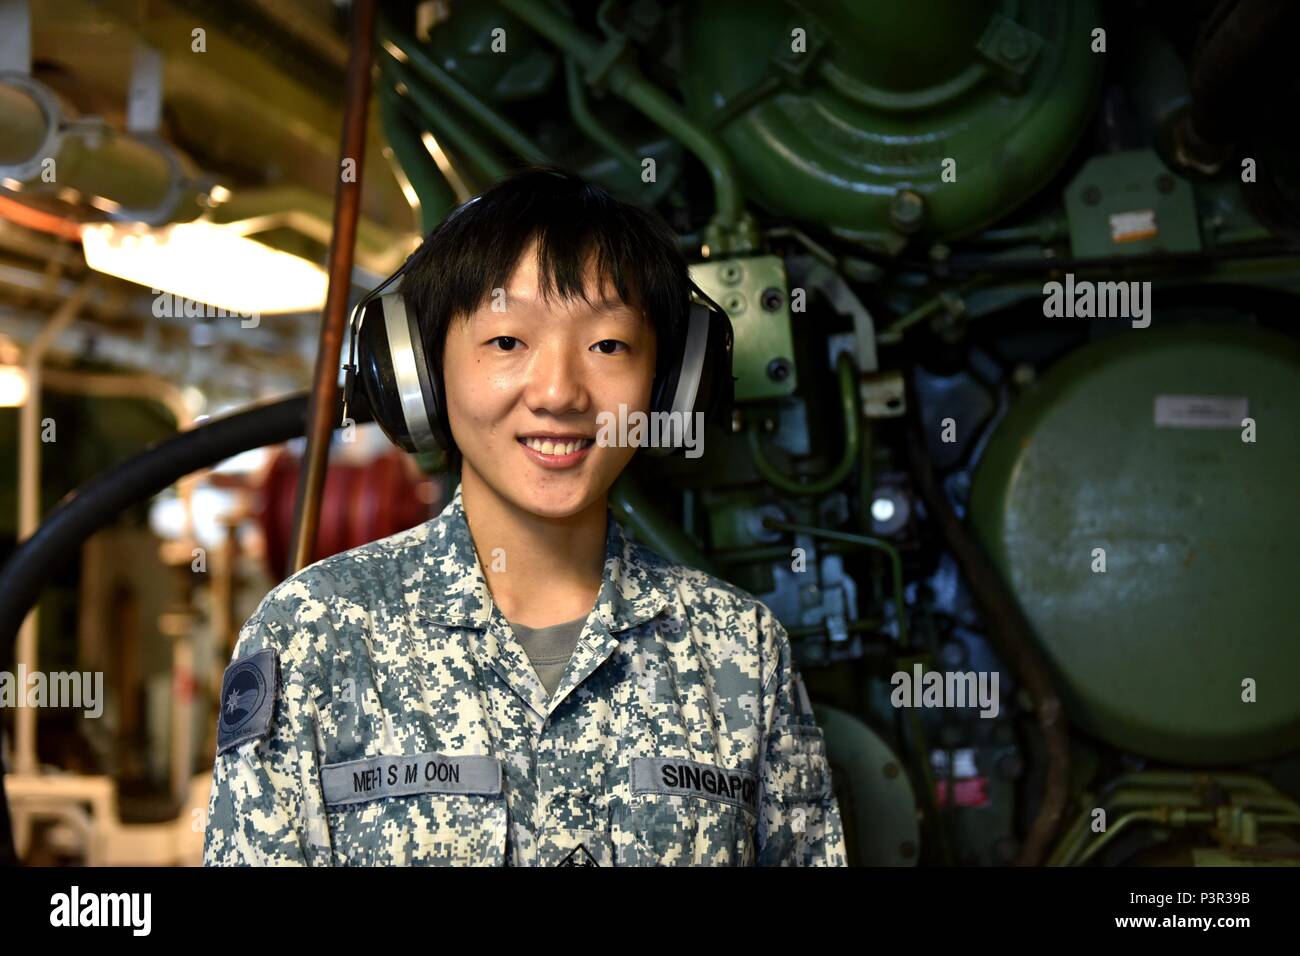 Im Gegensatz zu den meisten ihrer Kollegen in der Republik Singapur Marine, Militär Expert 1 Oon Shu Min begann ihre Karriere in der Marine Offshore- und Werftindustrie. Im April 2000, trat sie in die Marine als Mitte Karrierist und hat jeden Moment genießen. "Als ich jung war, mein Vater mir mitbringen würde auf seinen Reisen. Es fühlte sich sehr gut draußen auf dem Meer, und von dort aus wollte ich gerade erlebe, wie es ist, zu segeln", sagt Oon ihrer Entscheidung der Navy beizutreten. Sie ist jetzt ein Marine Systems Spezialist an Bord RSS standhaft. Während ihre Erfahrung hat sie gute Dienste in den Griff Stockfoto